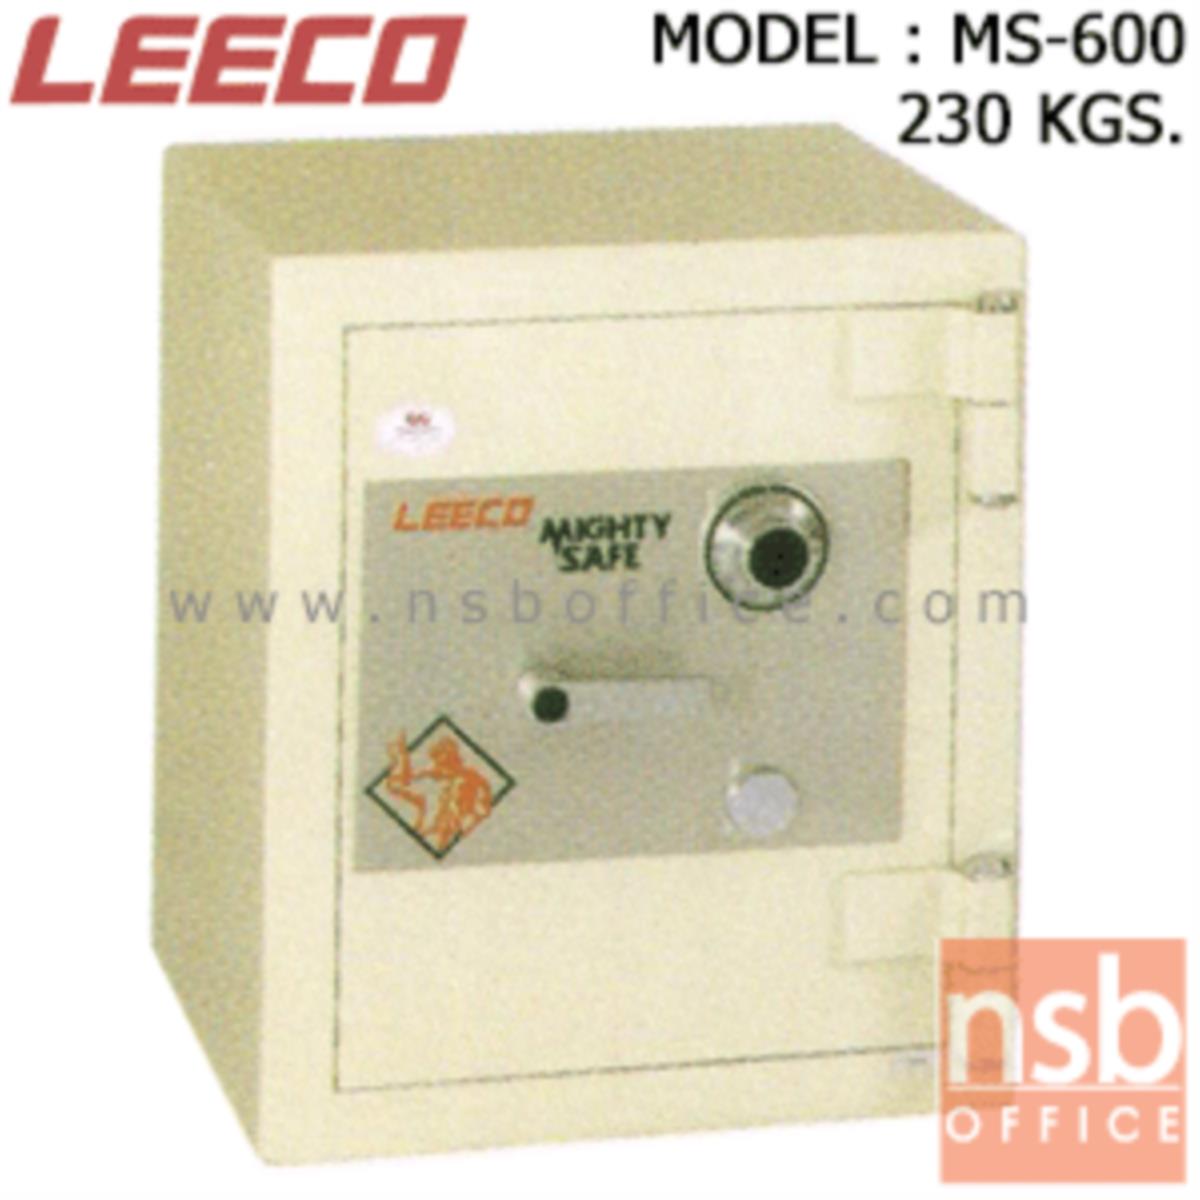 ตู้เซฟนิรภัย 230 กก. ลีโก้ รุ่น LEECO-MS-600 มี 1 กุญแจ 1 รหัส (เปลี่ยนรหัสไม่ได้)   